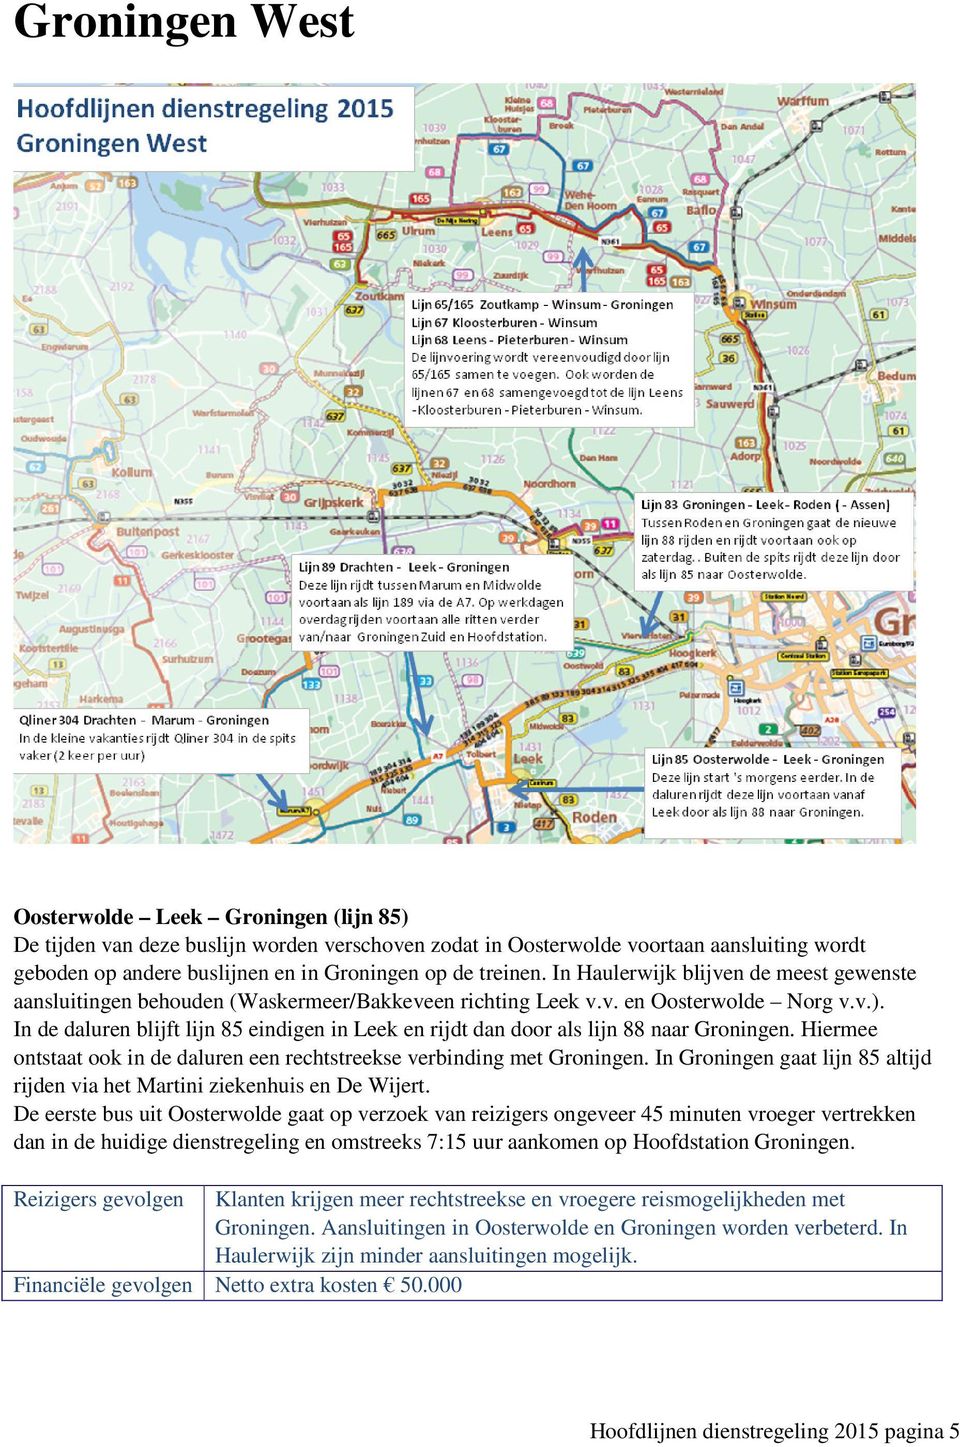 In de daluren blijft lijn 85 eindigen in Leek en rijdt dan door als lijn 88 naar Groningen. Hiermee ontstaat ook in de daluren een rechtstreekse verbinding met Groningen.